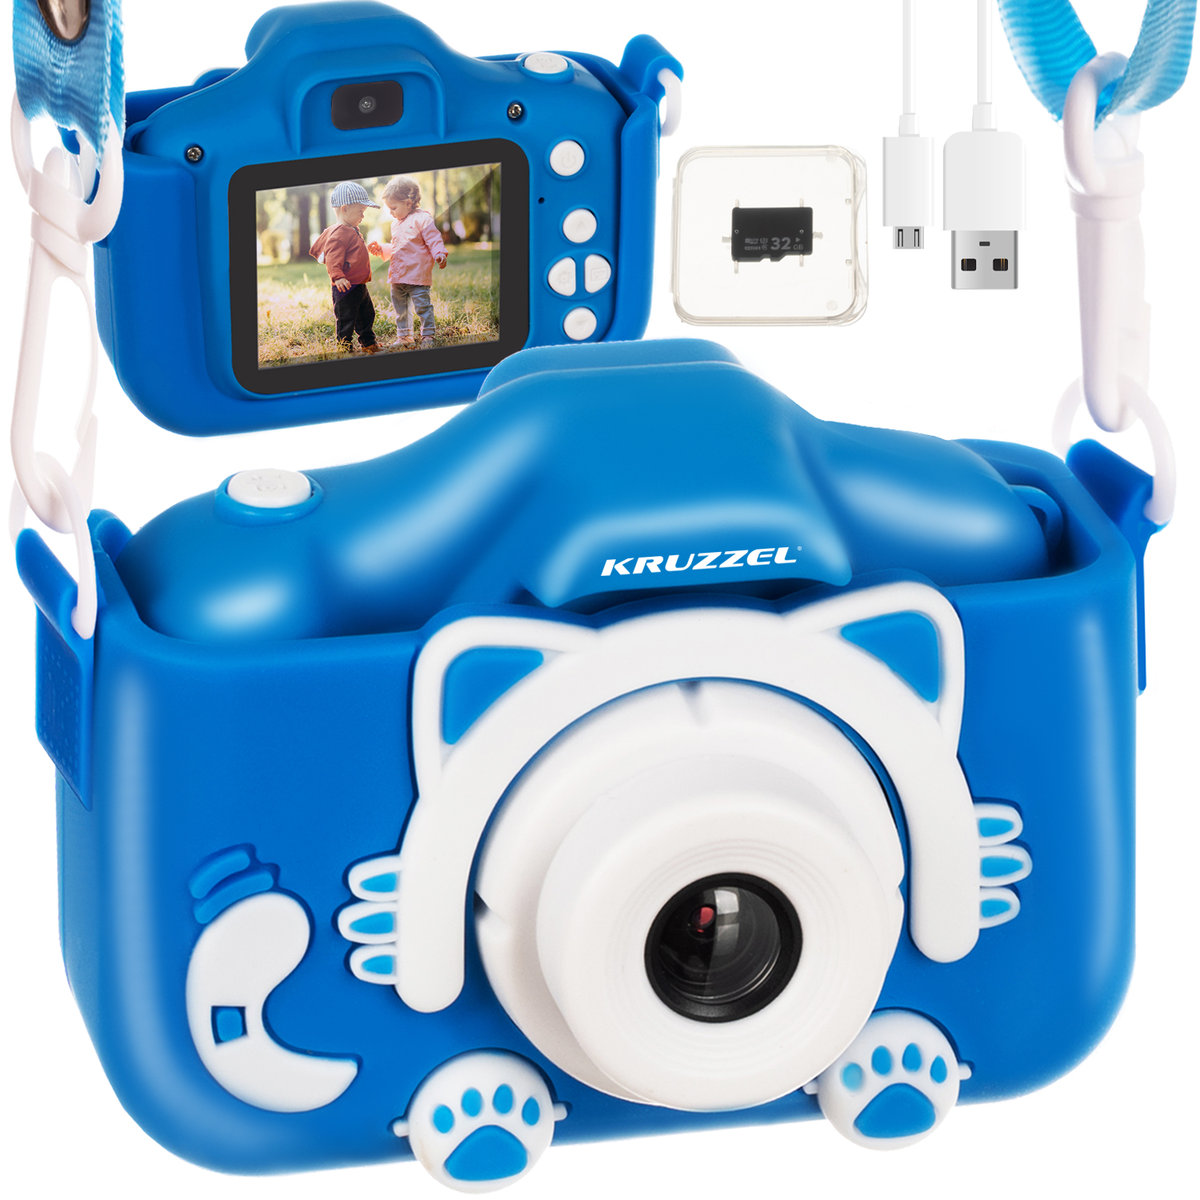 Aparat dla Dzieci Cyfrowy Kamera Fotograficzny + Karta 32gb Full HD Kotek KRUZZEL